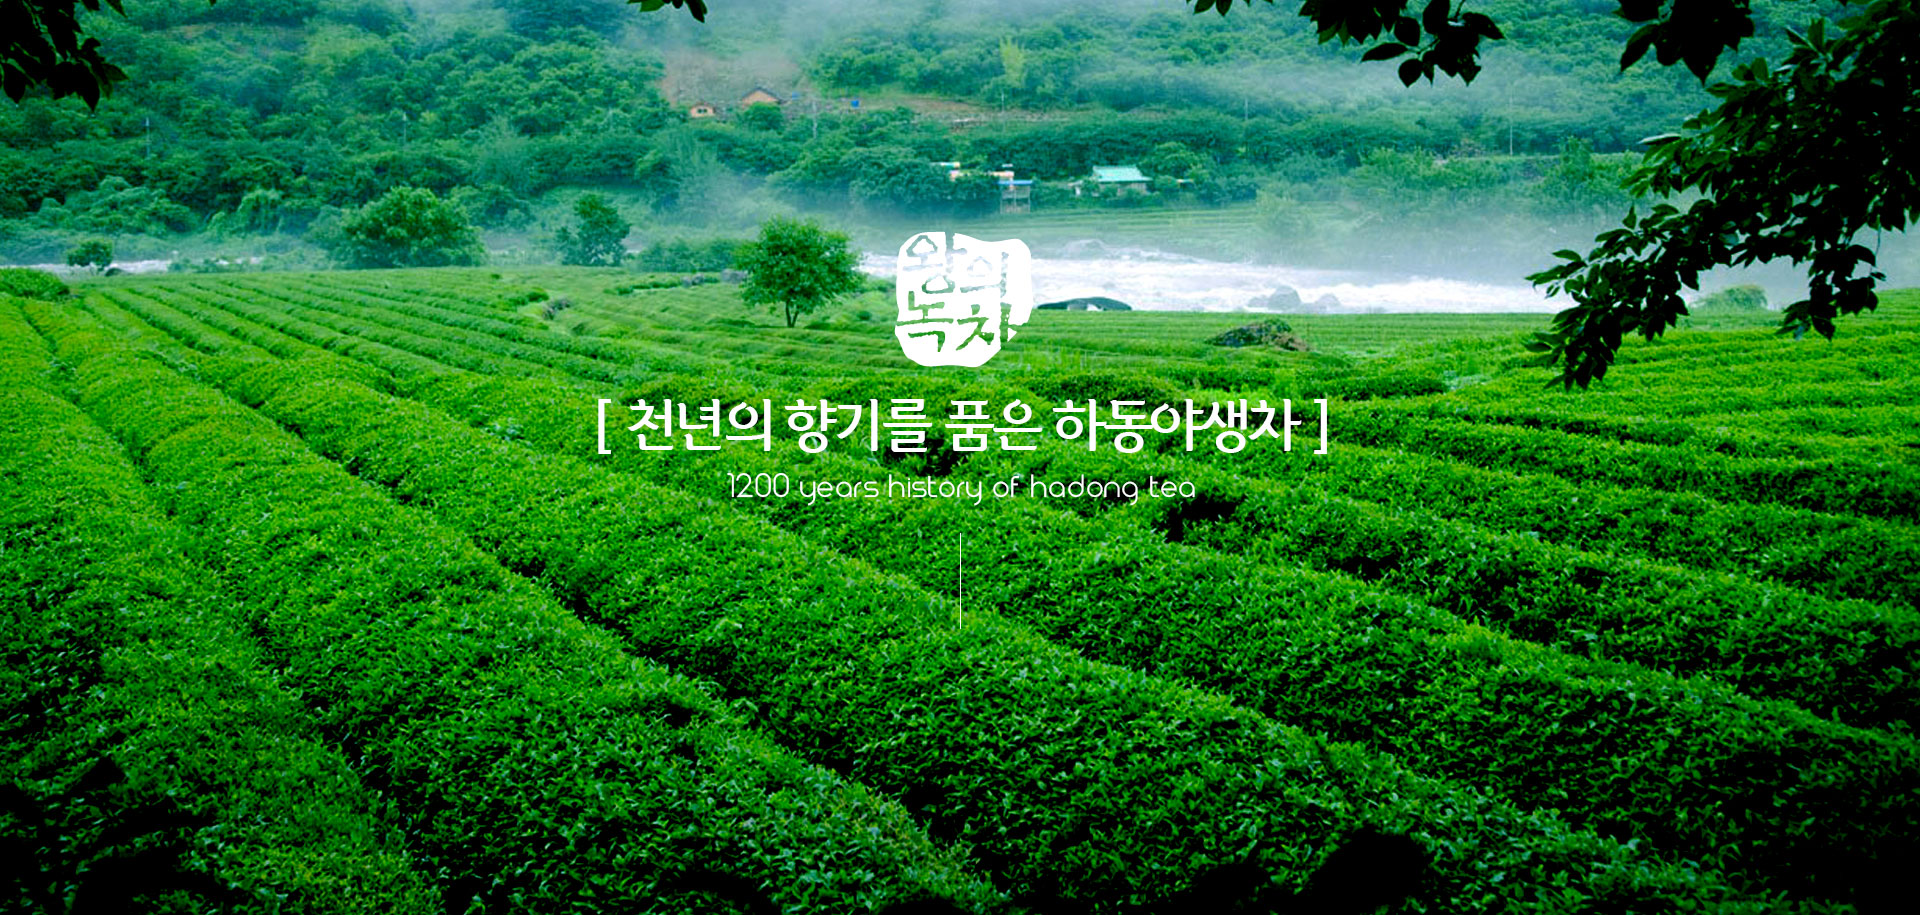 왕의녹차. [ 천년의 향기를 품은 하동야생차 ] 1200 years history of hadong tea